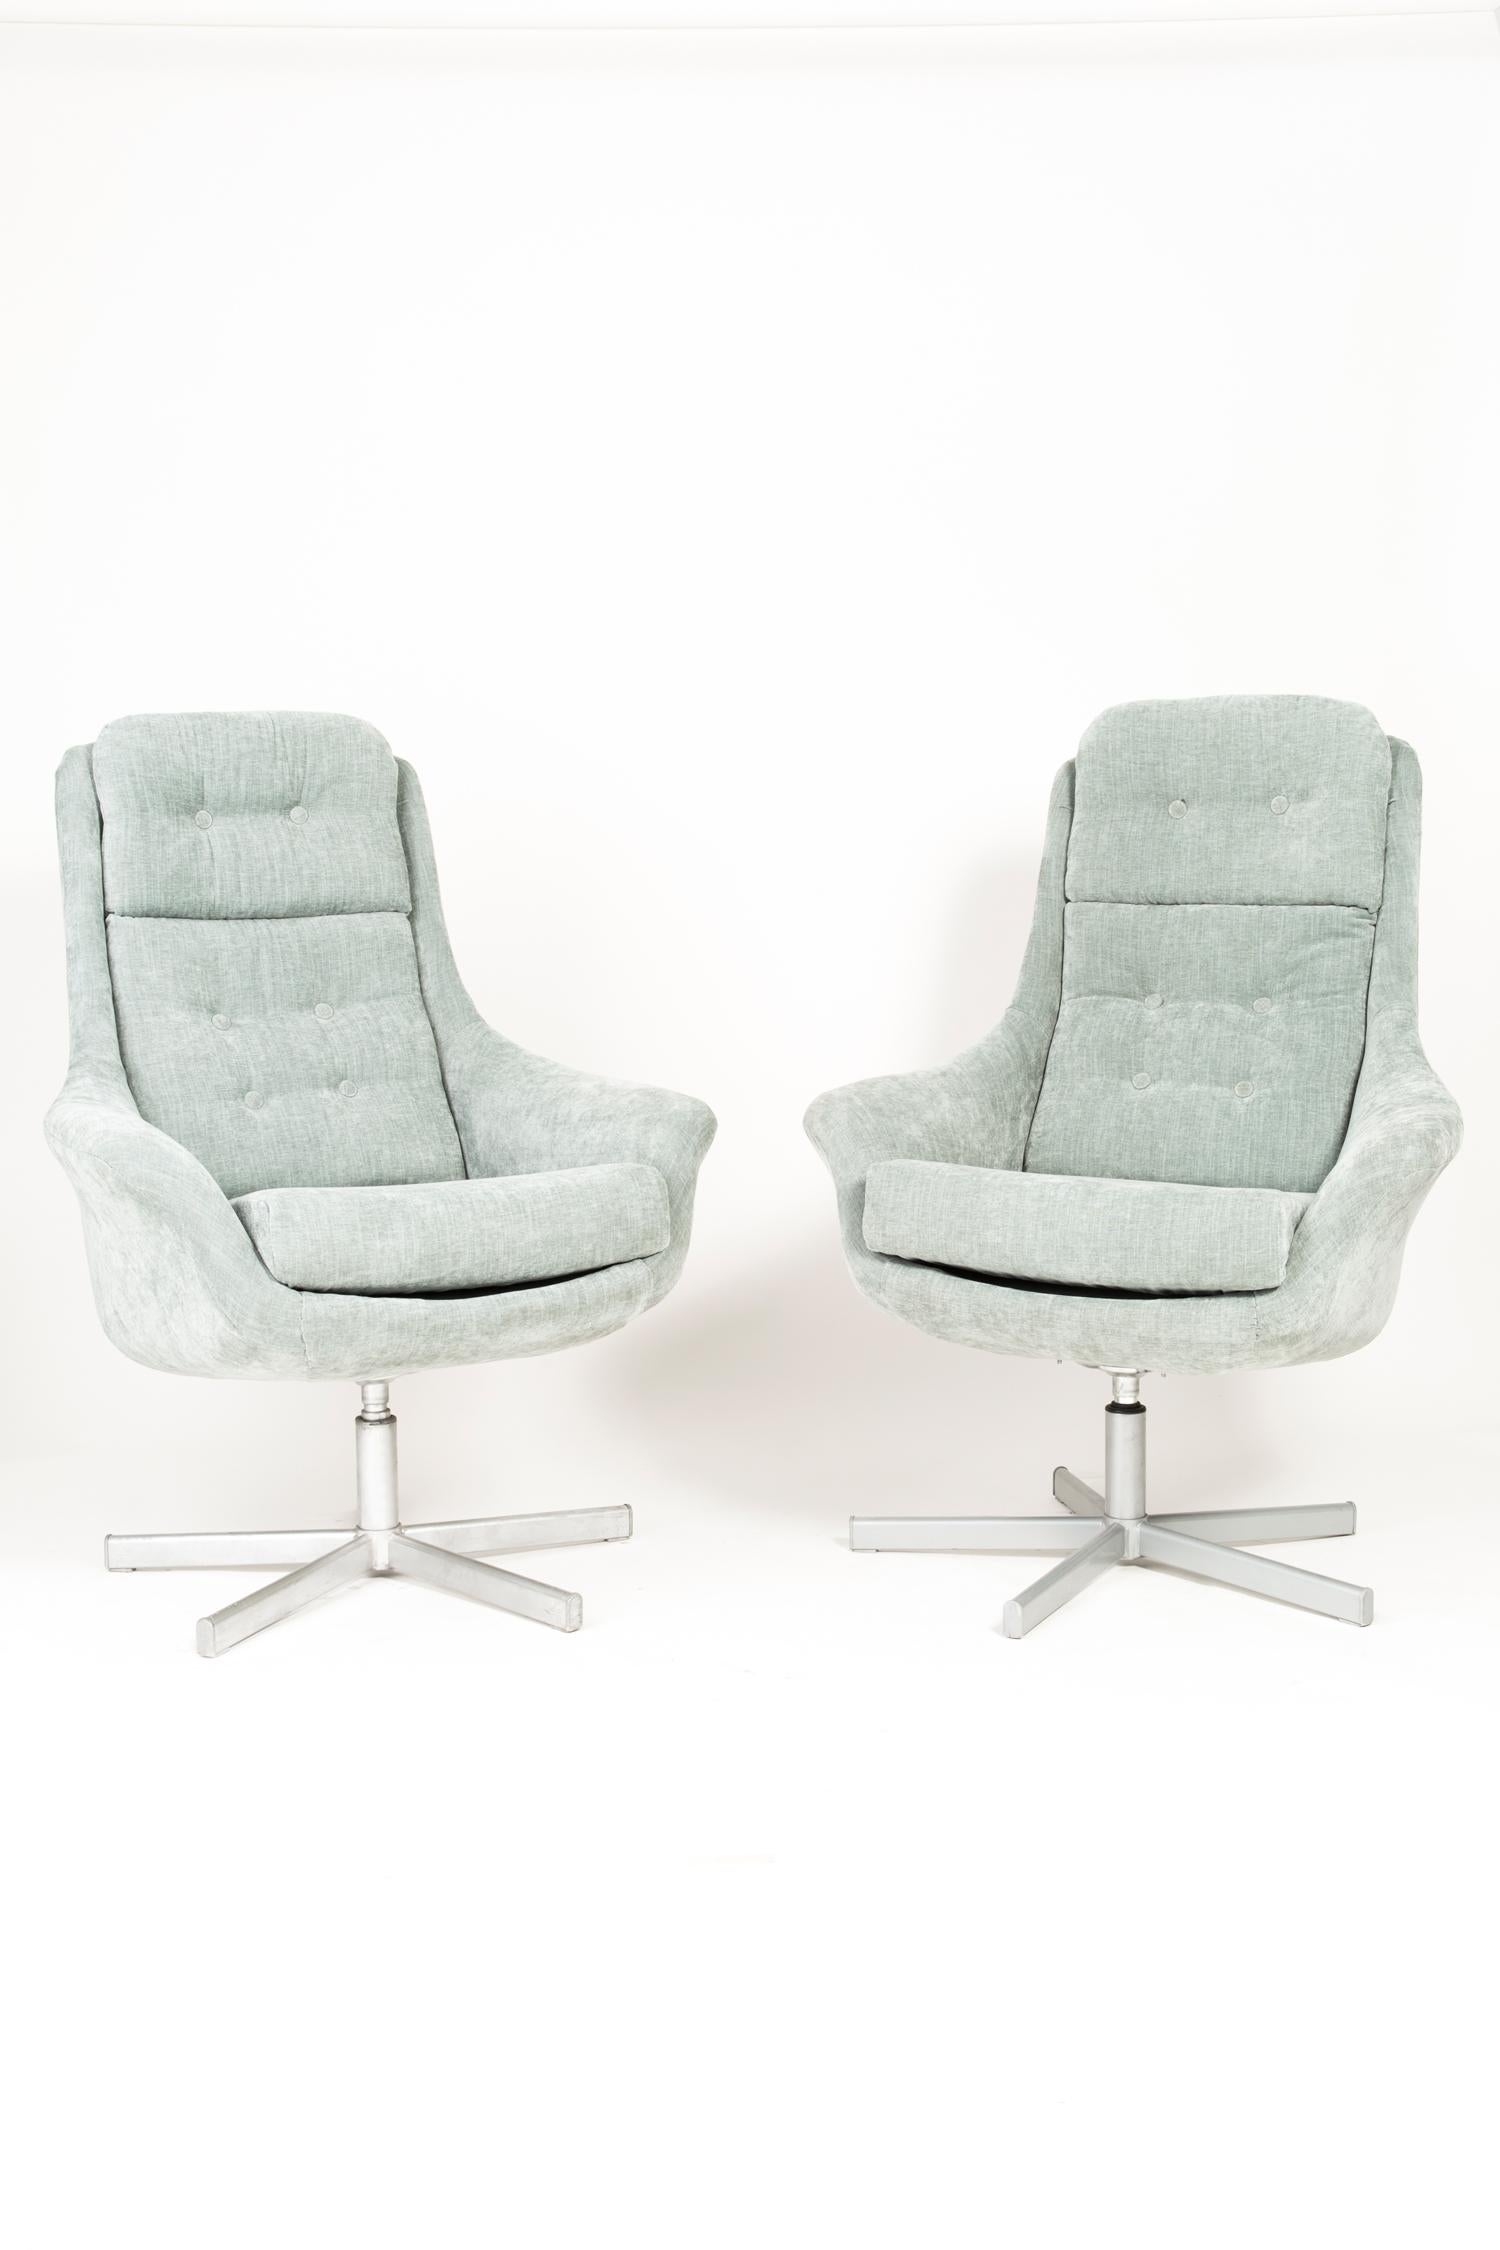 Ensemble de deux fauteuils pivotants des années 1970, fabriqués dans l'usine de meubles silésienne de Swiebodzin - à l'heure actuelle, ils sont uniques. Grâce à leurs dimensions, ils s'intègrent parfaitement, même dans les petits appartements, en